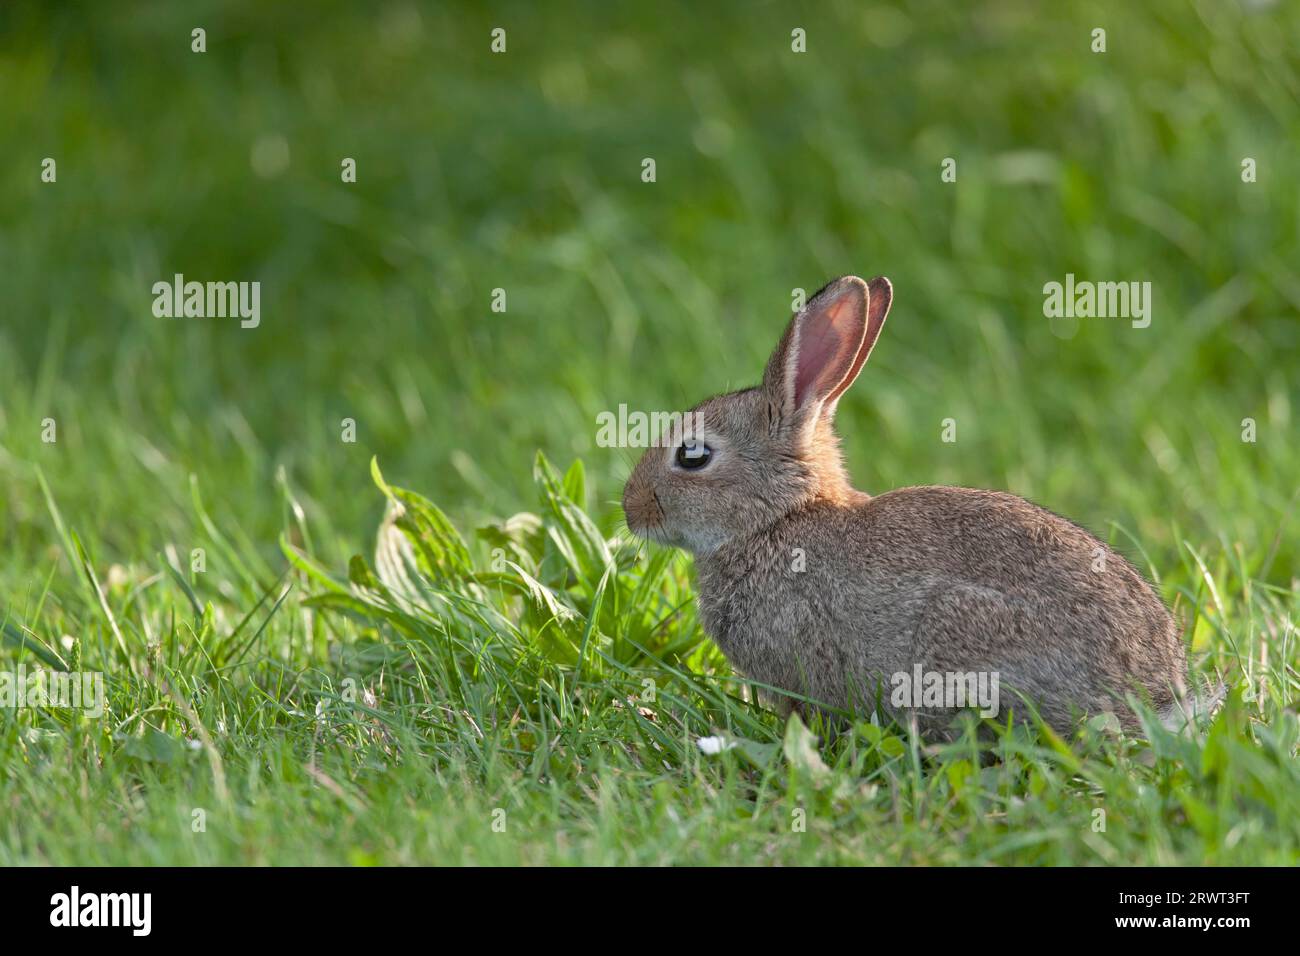 Le lapin européen (Oryctolagus cuniculus) peut produire 4 à 7 portées de descendance par an (lapin commun) dans des conditions optimales (Kit photo) Banque D'Images